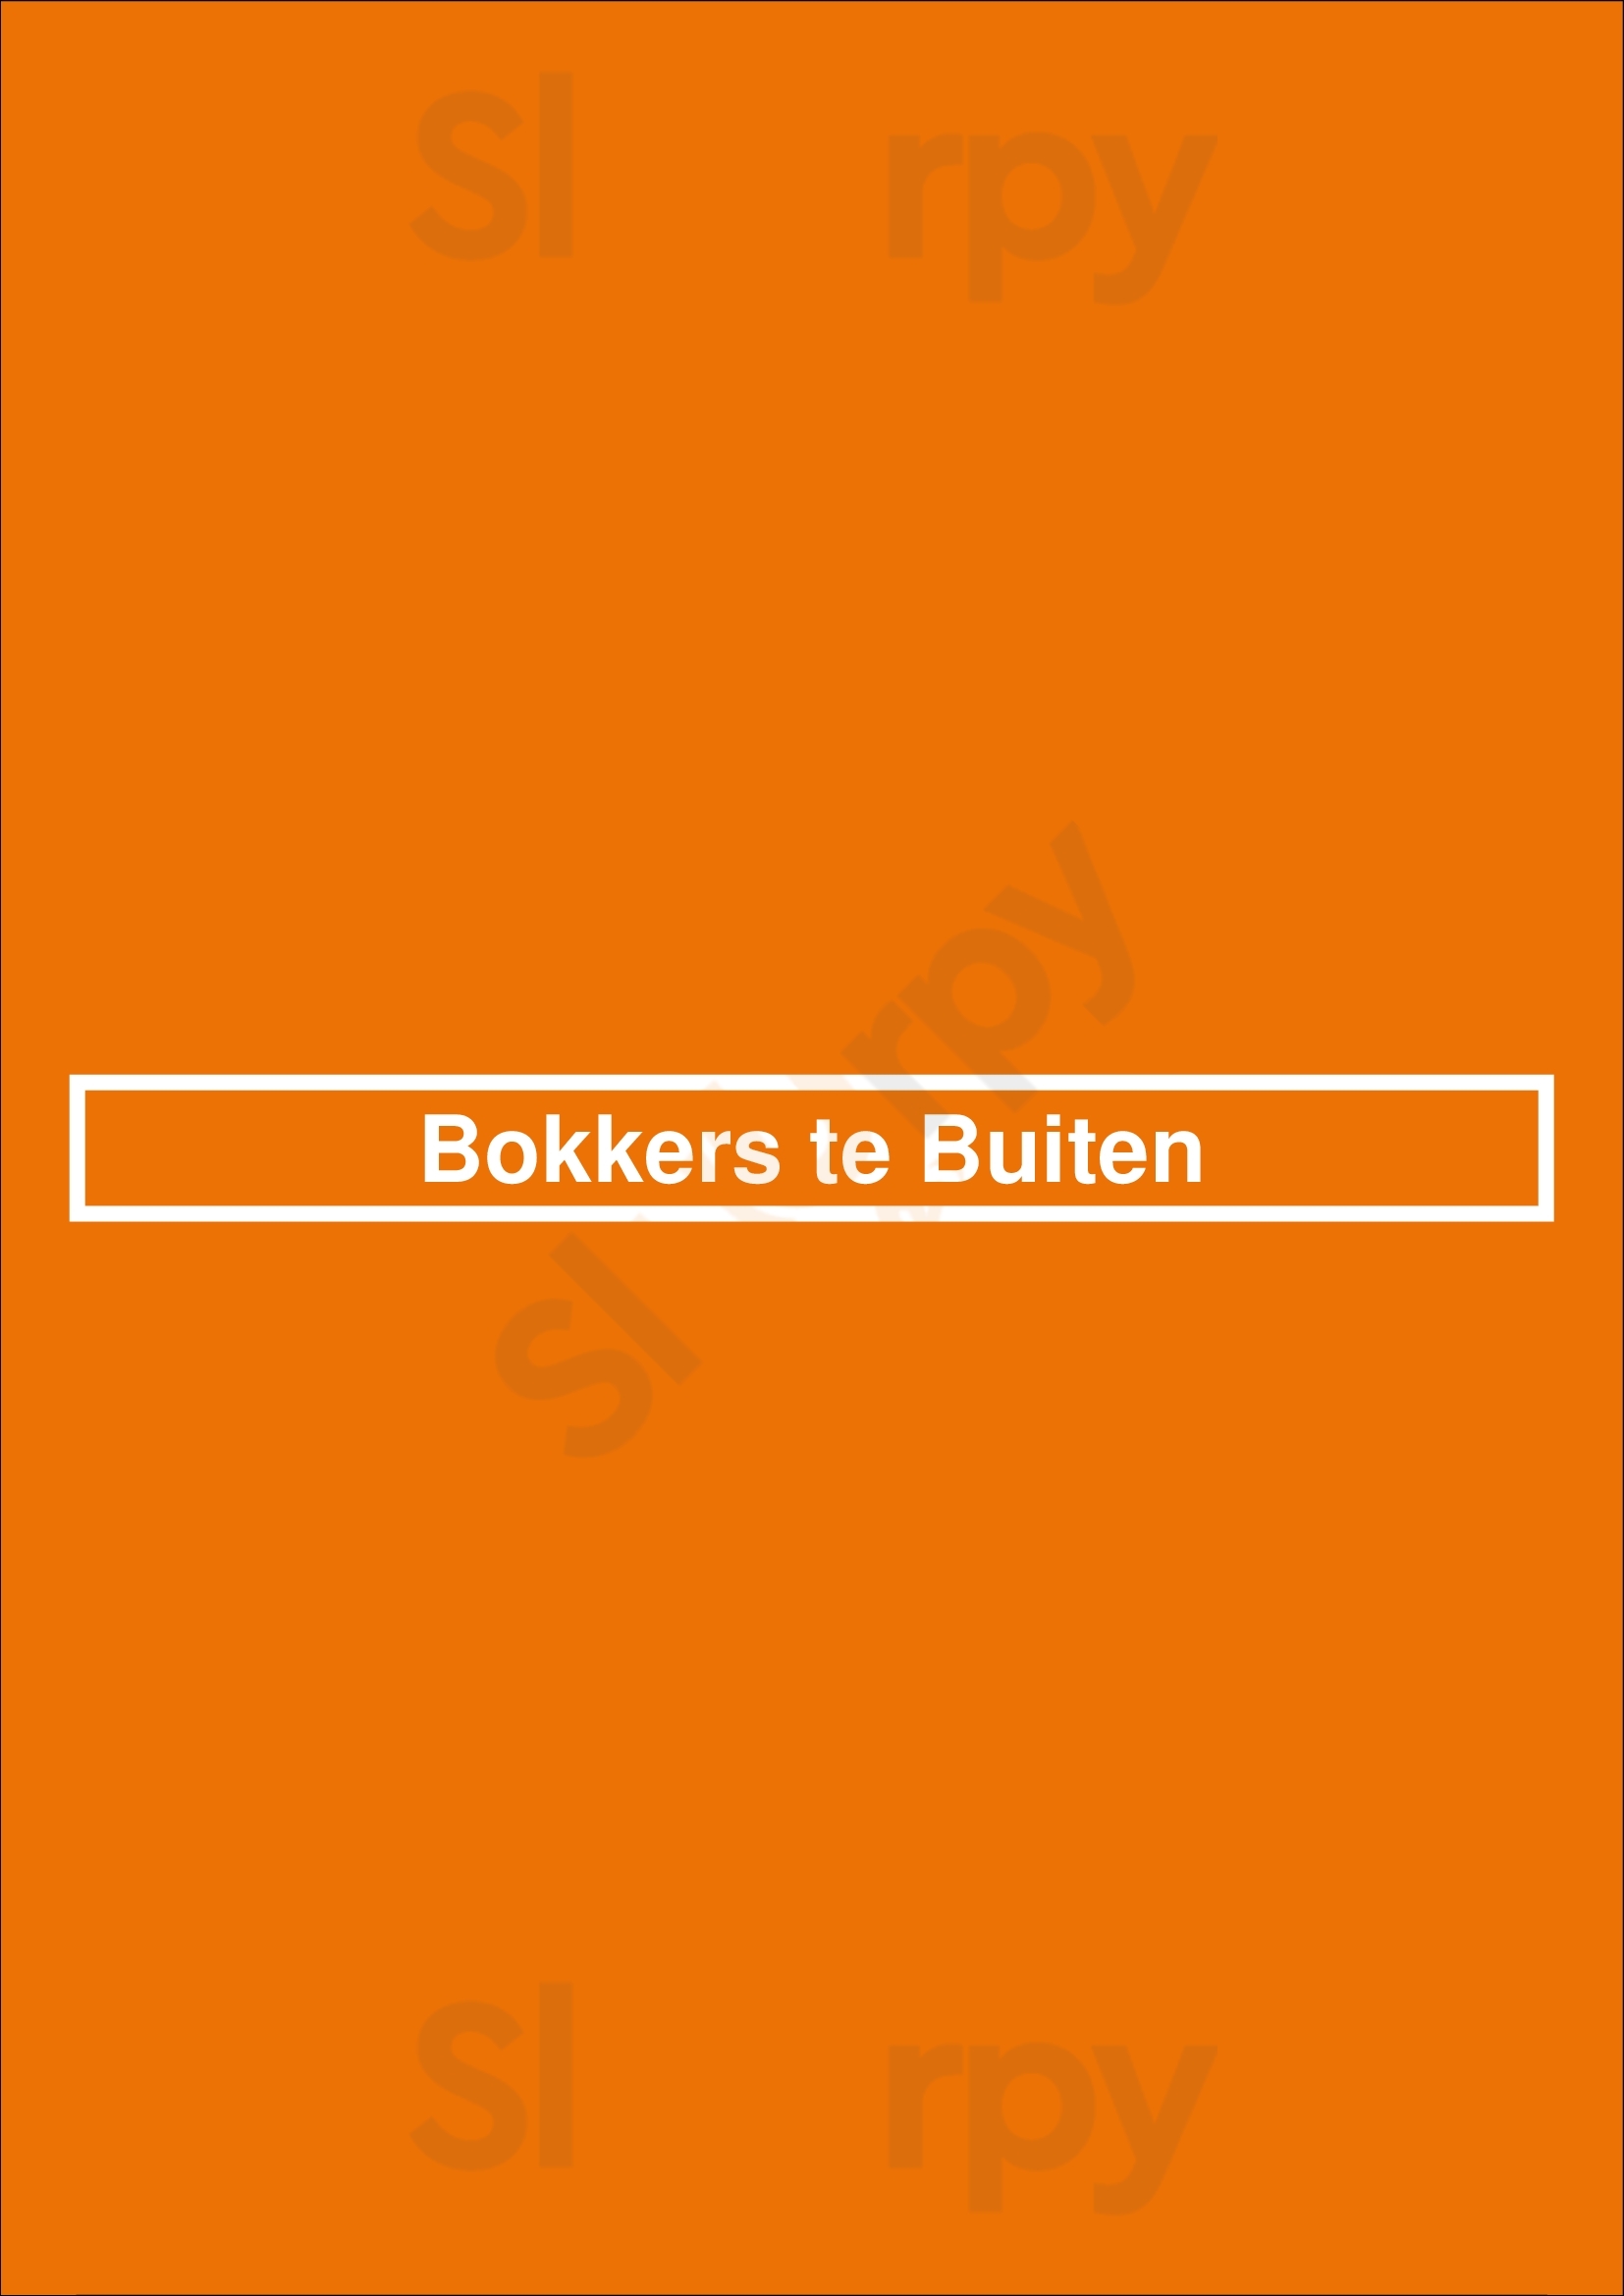 Bokkers Te Buiten Zwolle Menu - 1